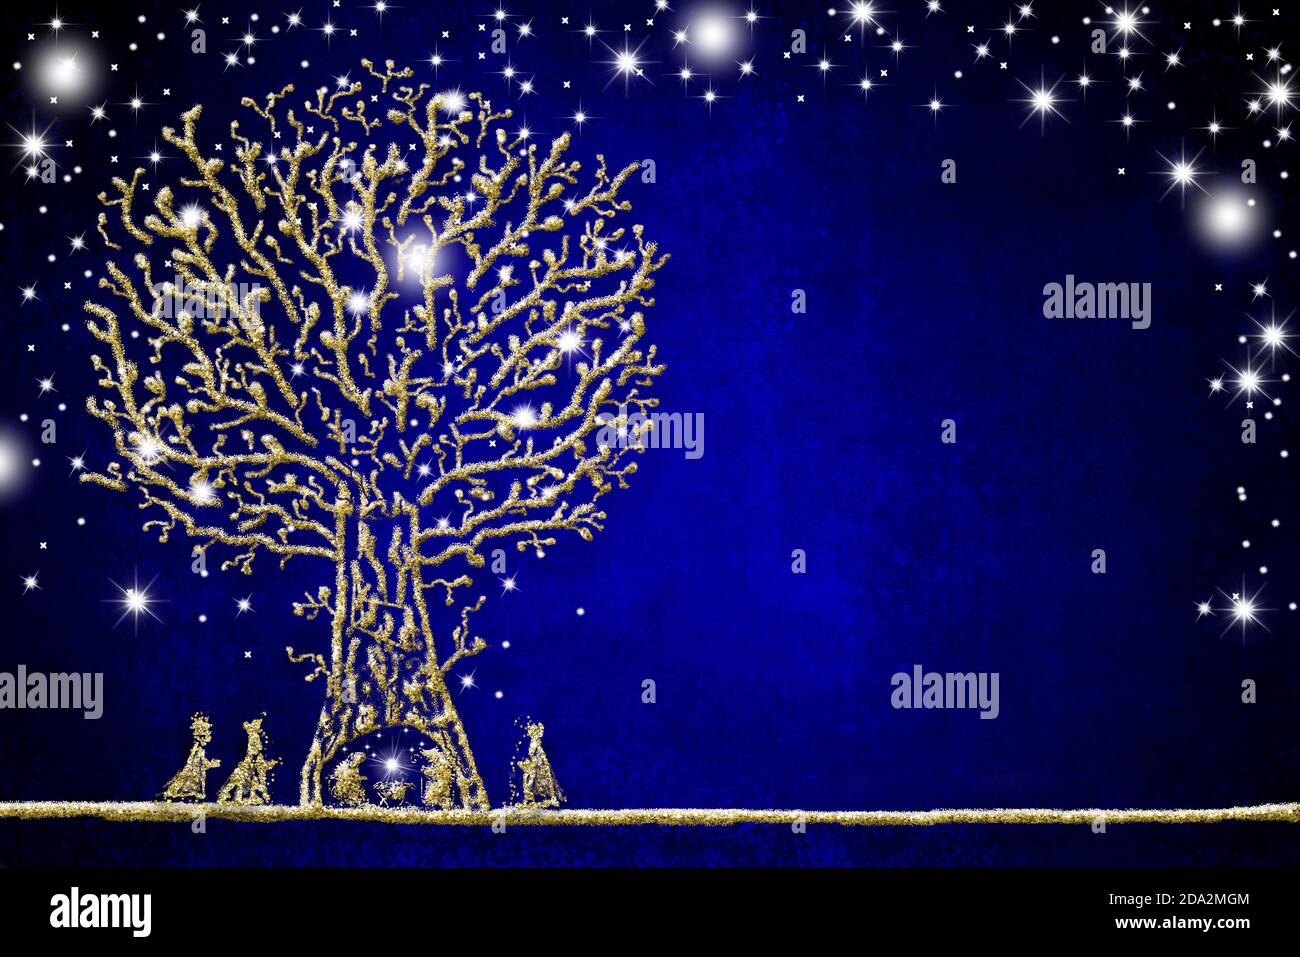 Cartes de voeux pour la scène Nativité de Noël, dessin abstrait à main levée de la scène Nativité, trois Sages et arbre avec paillettes dorées sur papier bleu Banque D'Images